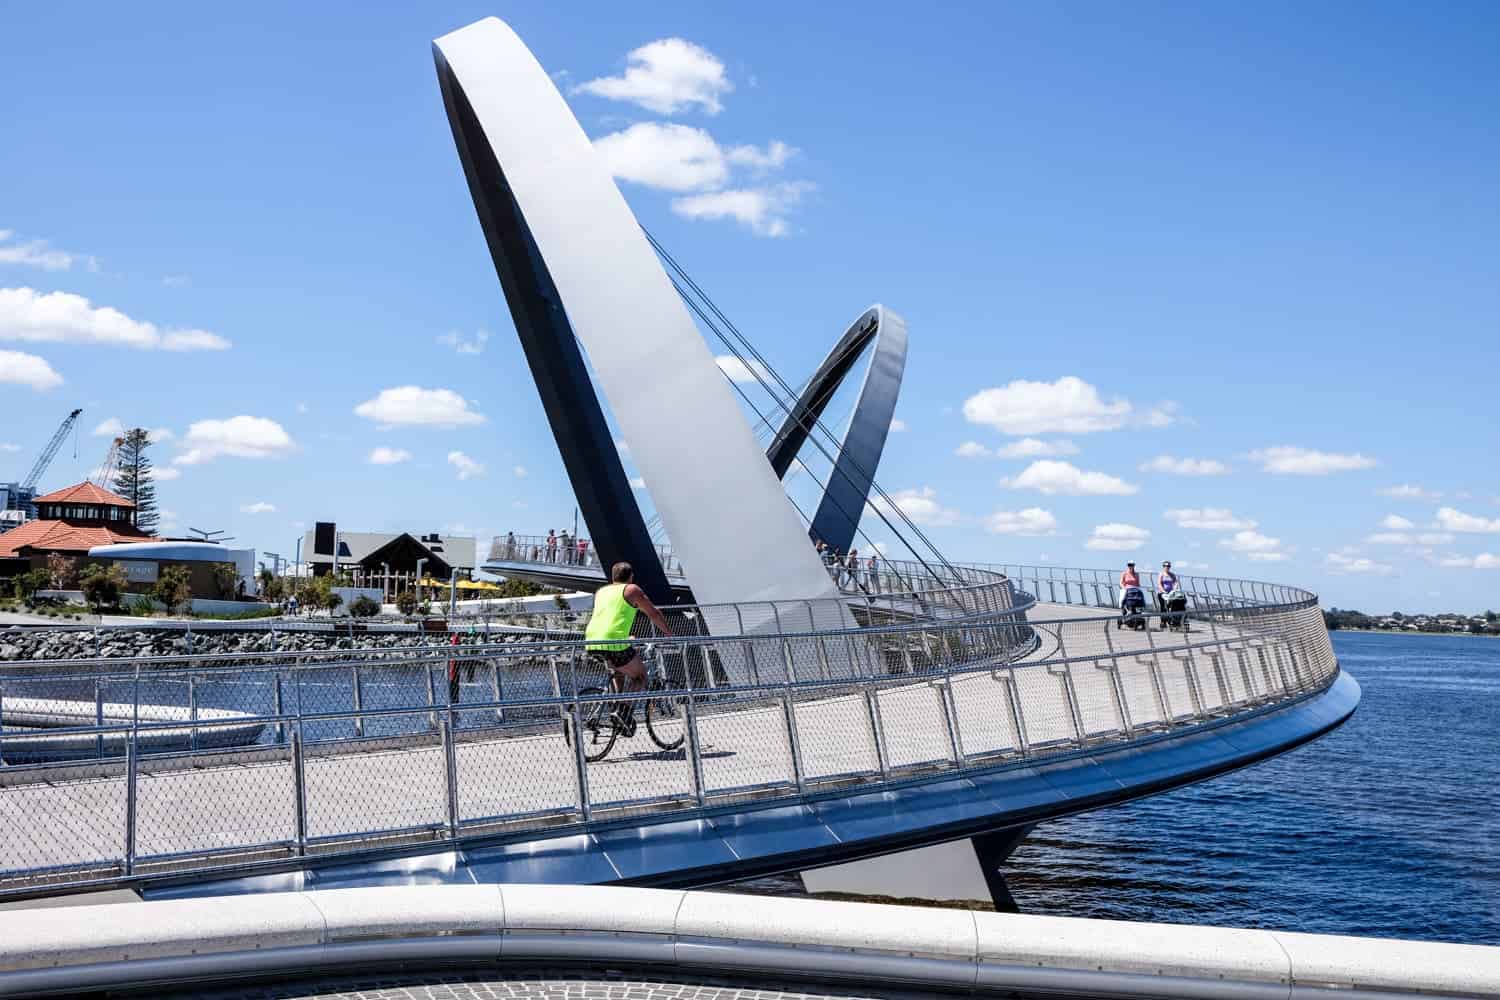 Los sinuosos puentes decorados con arcos de bucle plateado en el proyecto de desarrollo de muelles Elizabeth Quay en Perth